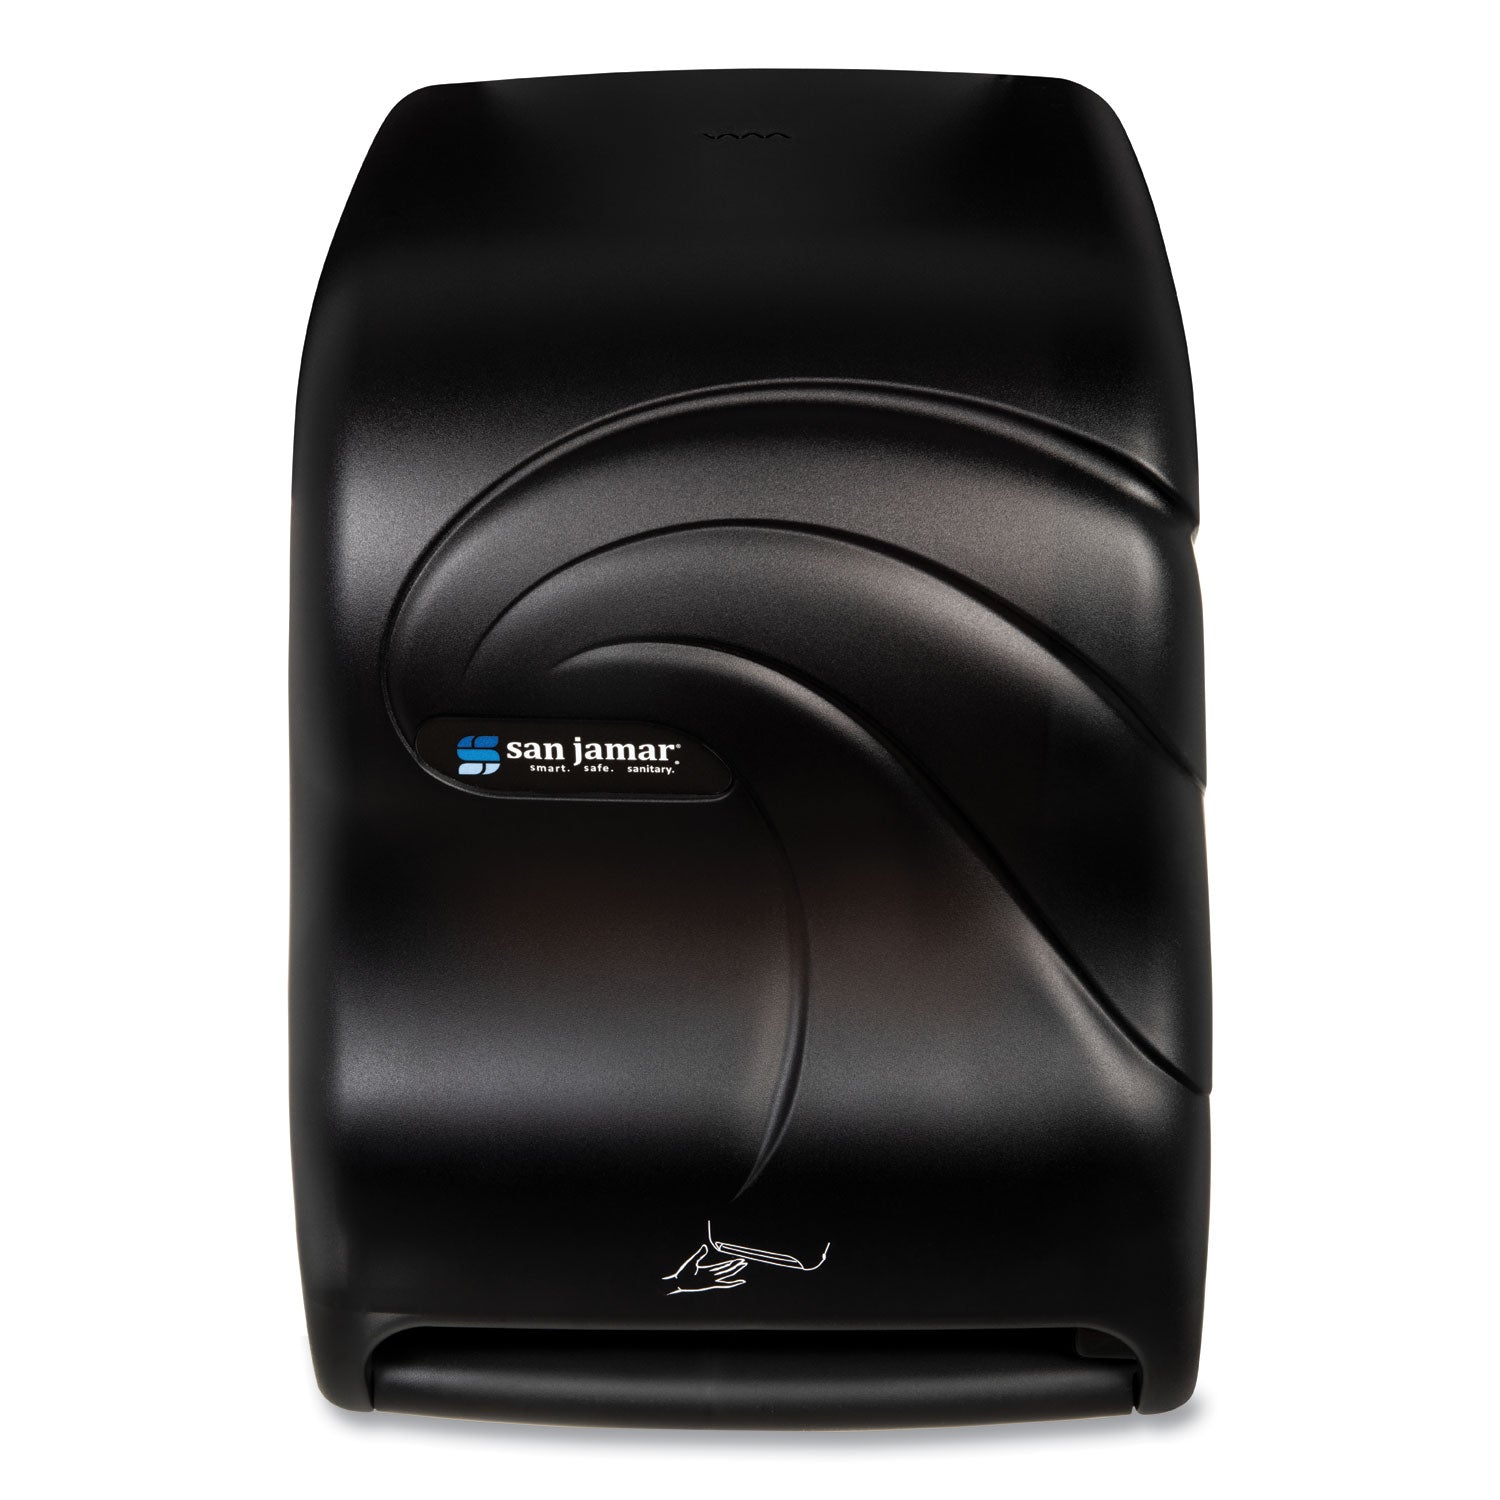 smart-system-with-iq-sensor-towel-dispenser-1175-x-925-x-165-black-pearl_sjmt1490tbk - 1